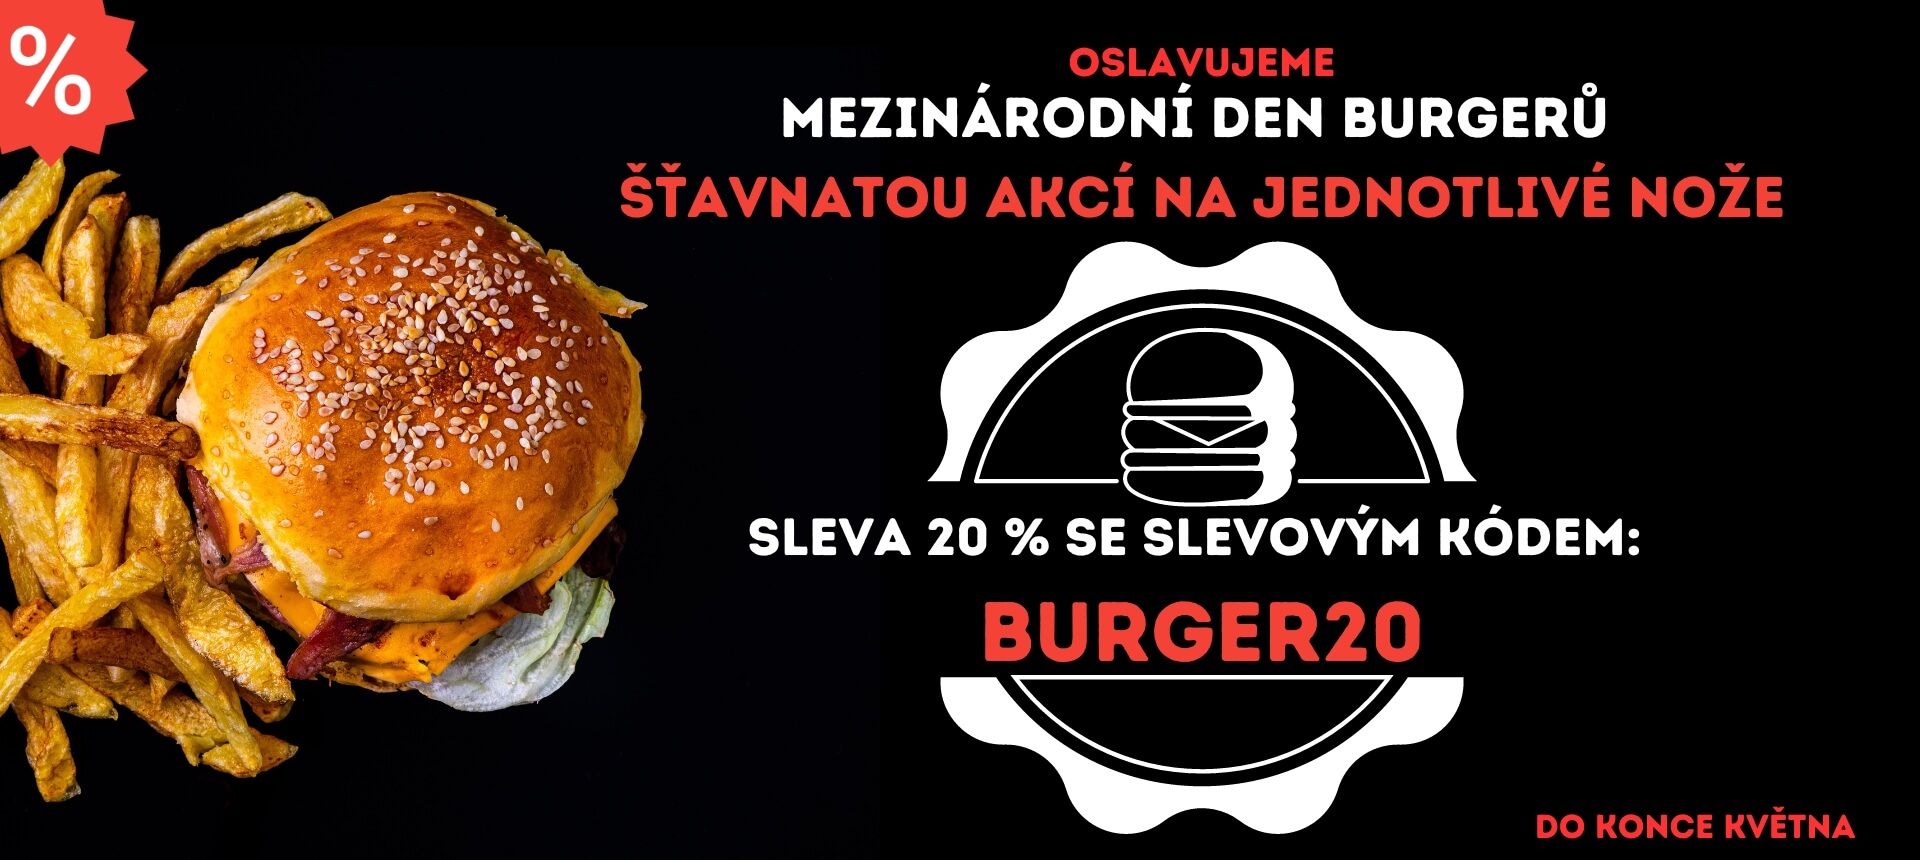 Velká akce k Mezinárodnímu dni burgerů